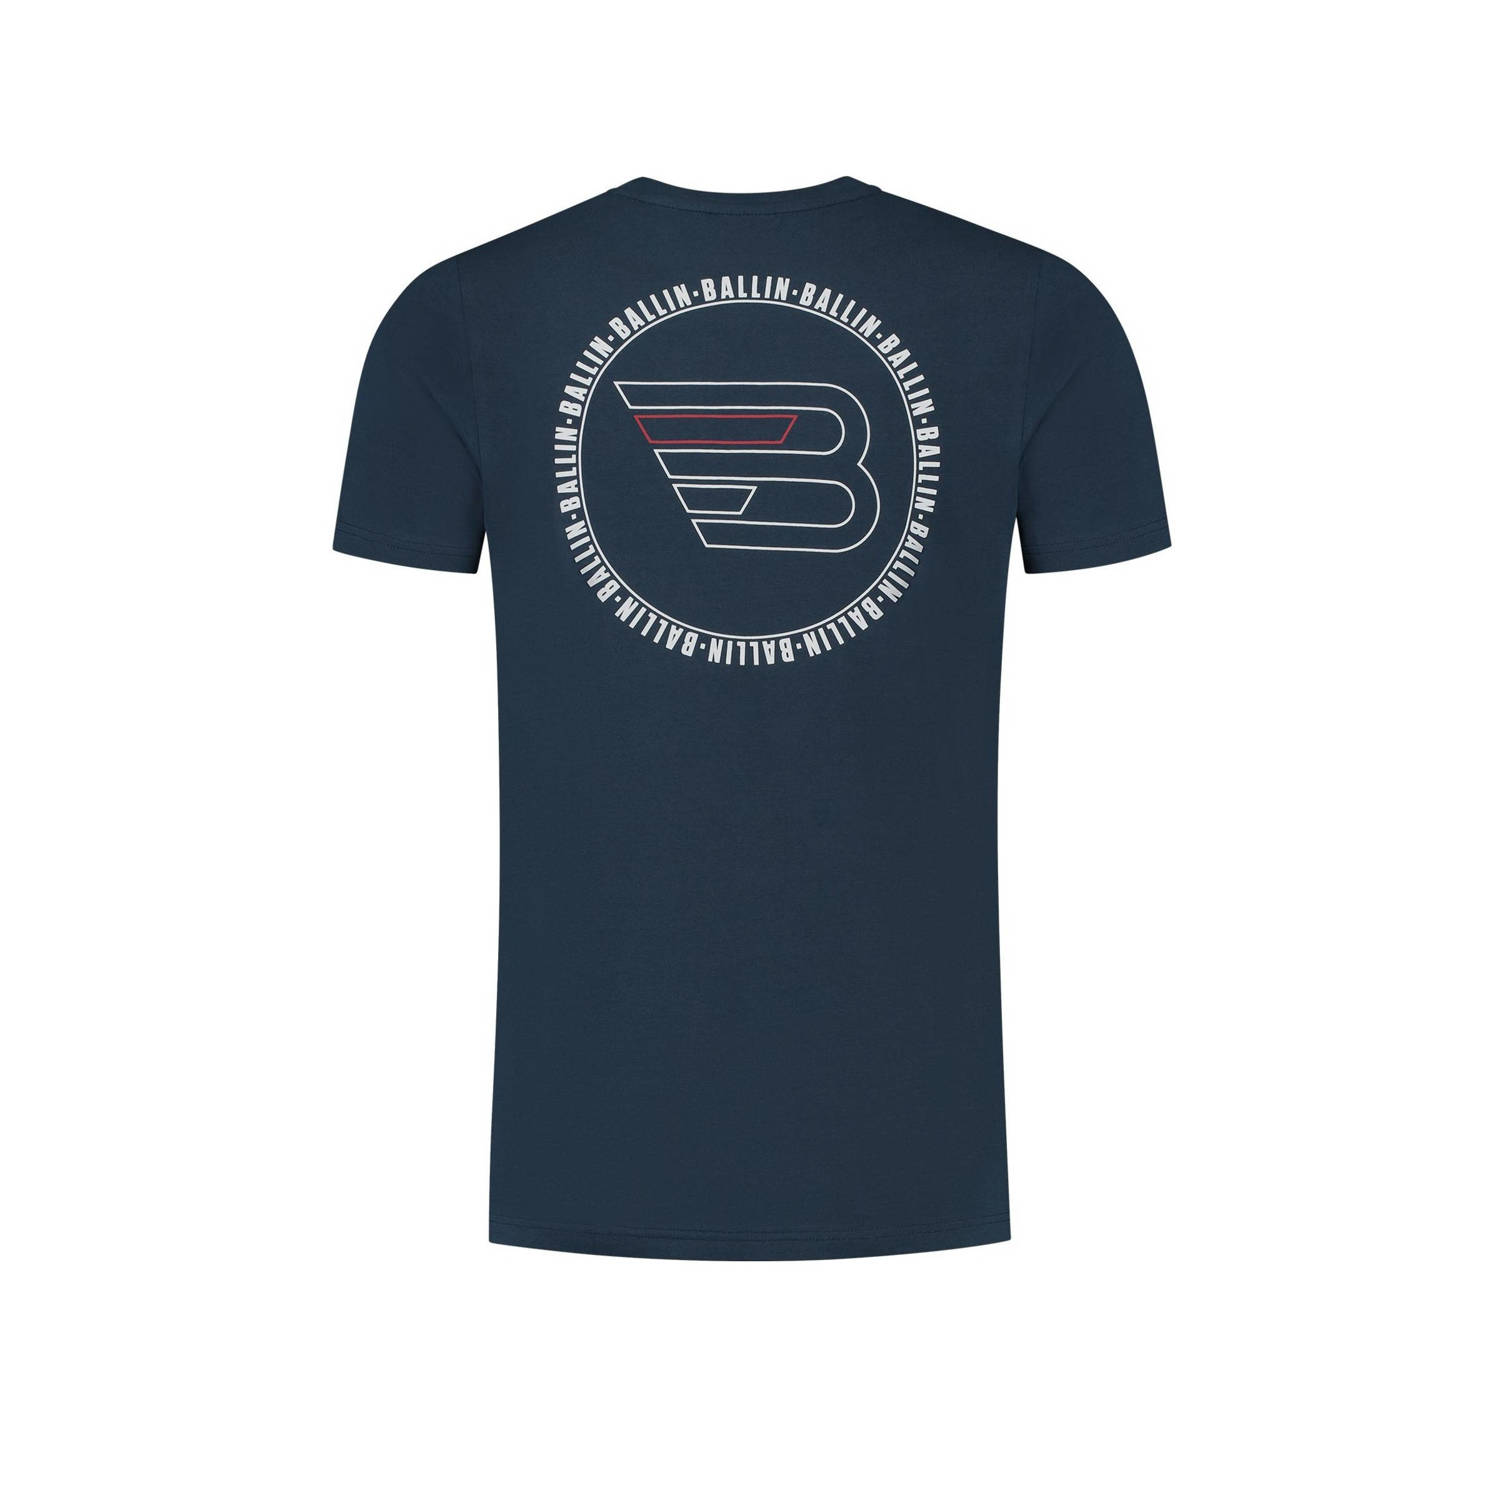 Ballin T-shirt met backprint navy